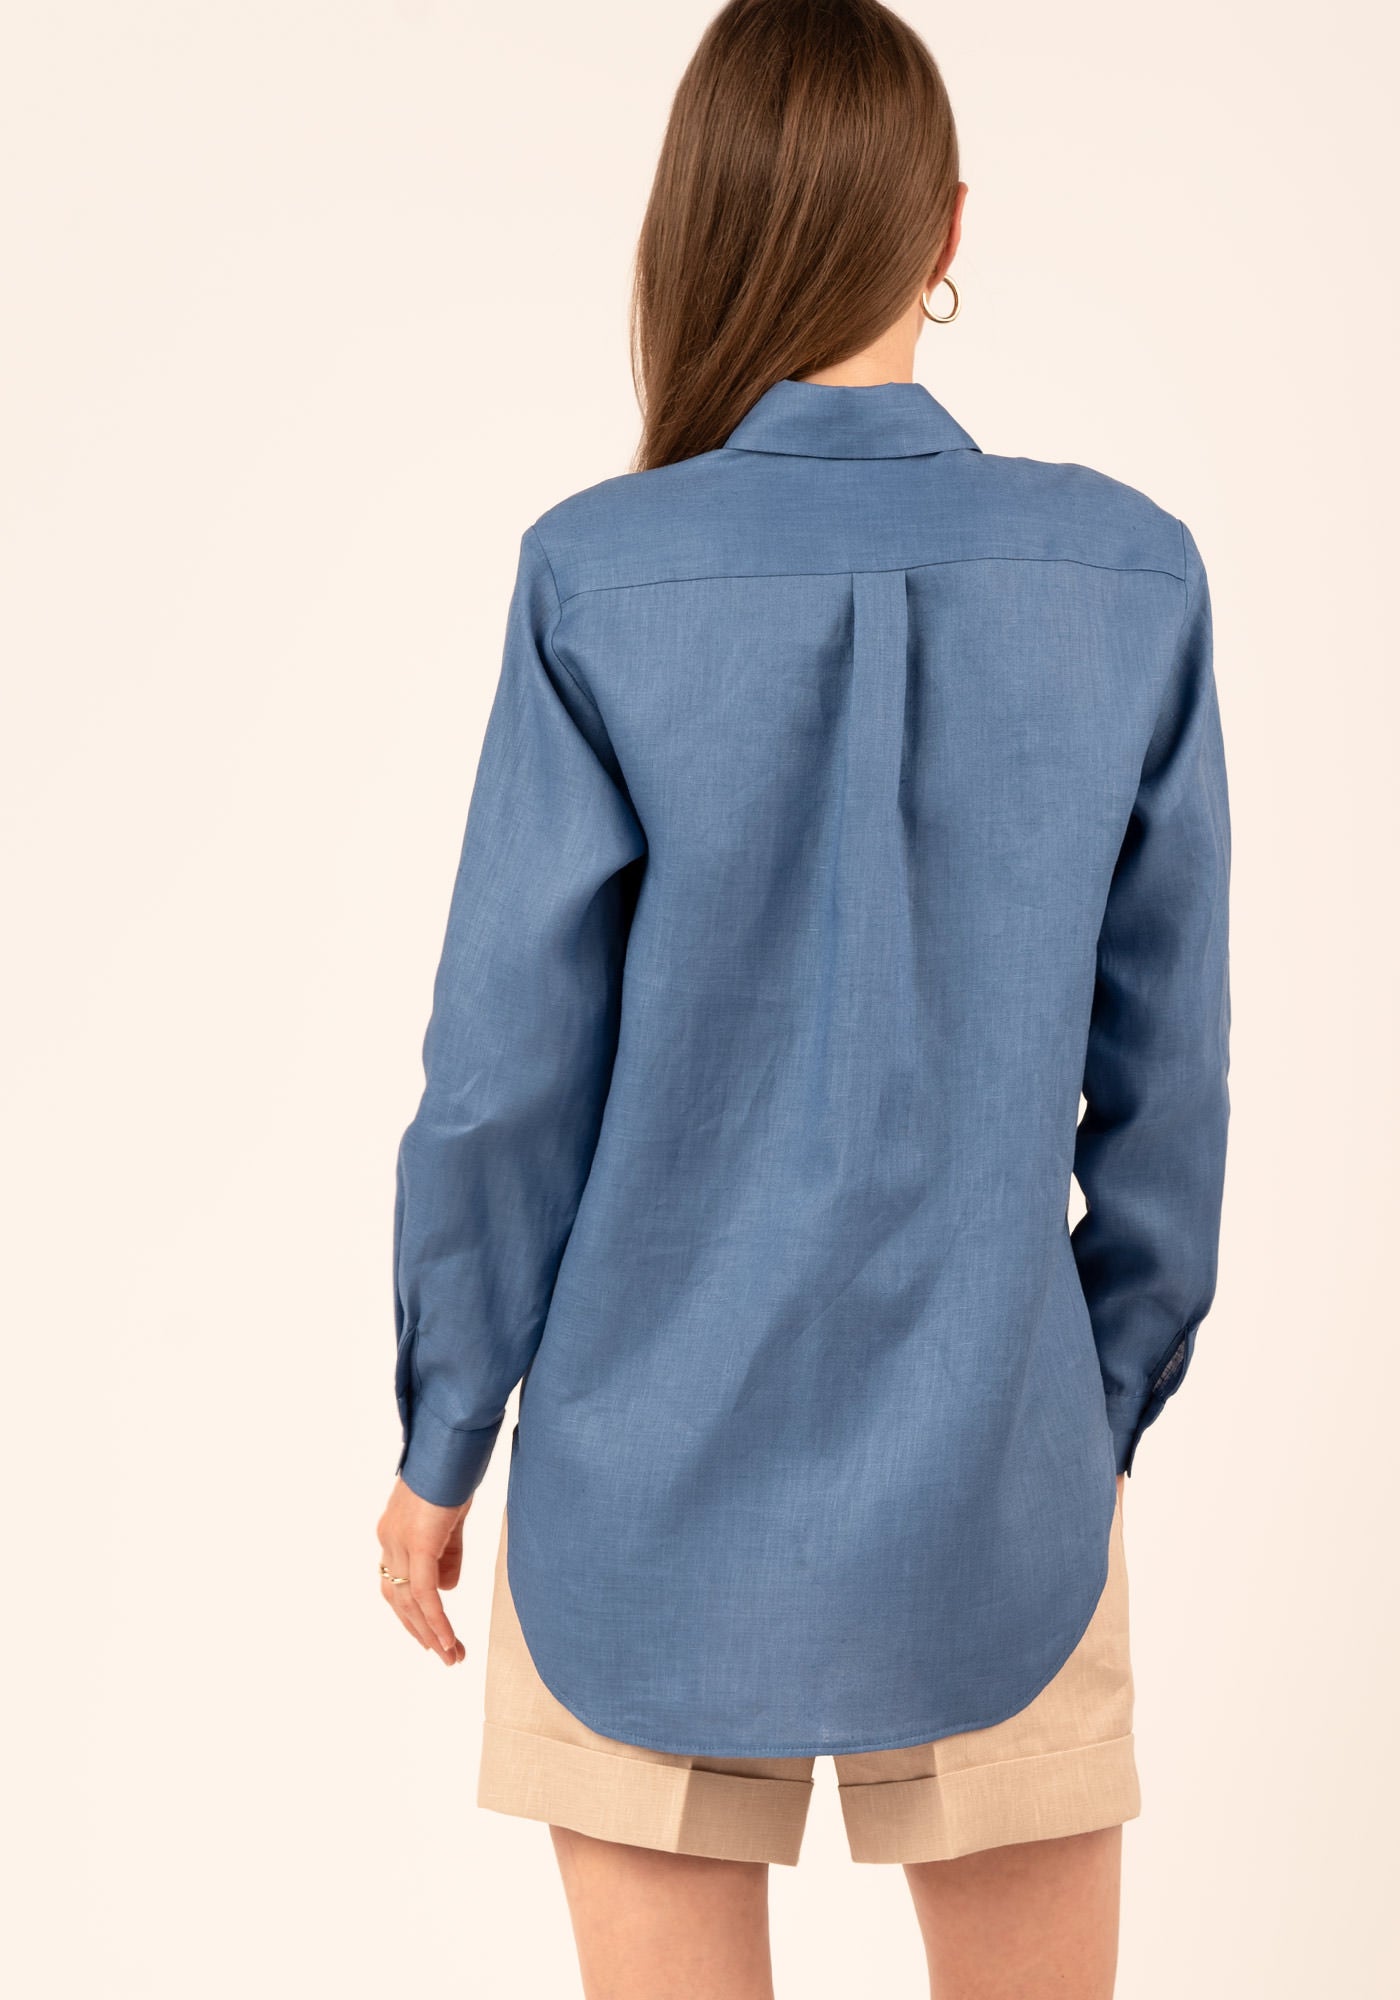 Women's Relaxed fit Linen Shirt in Blue